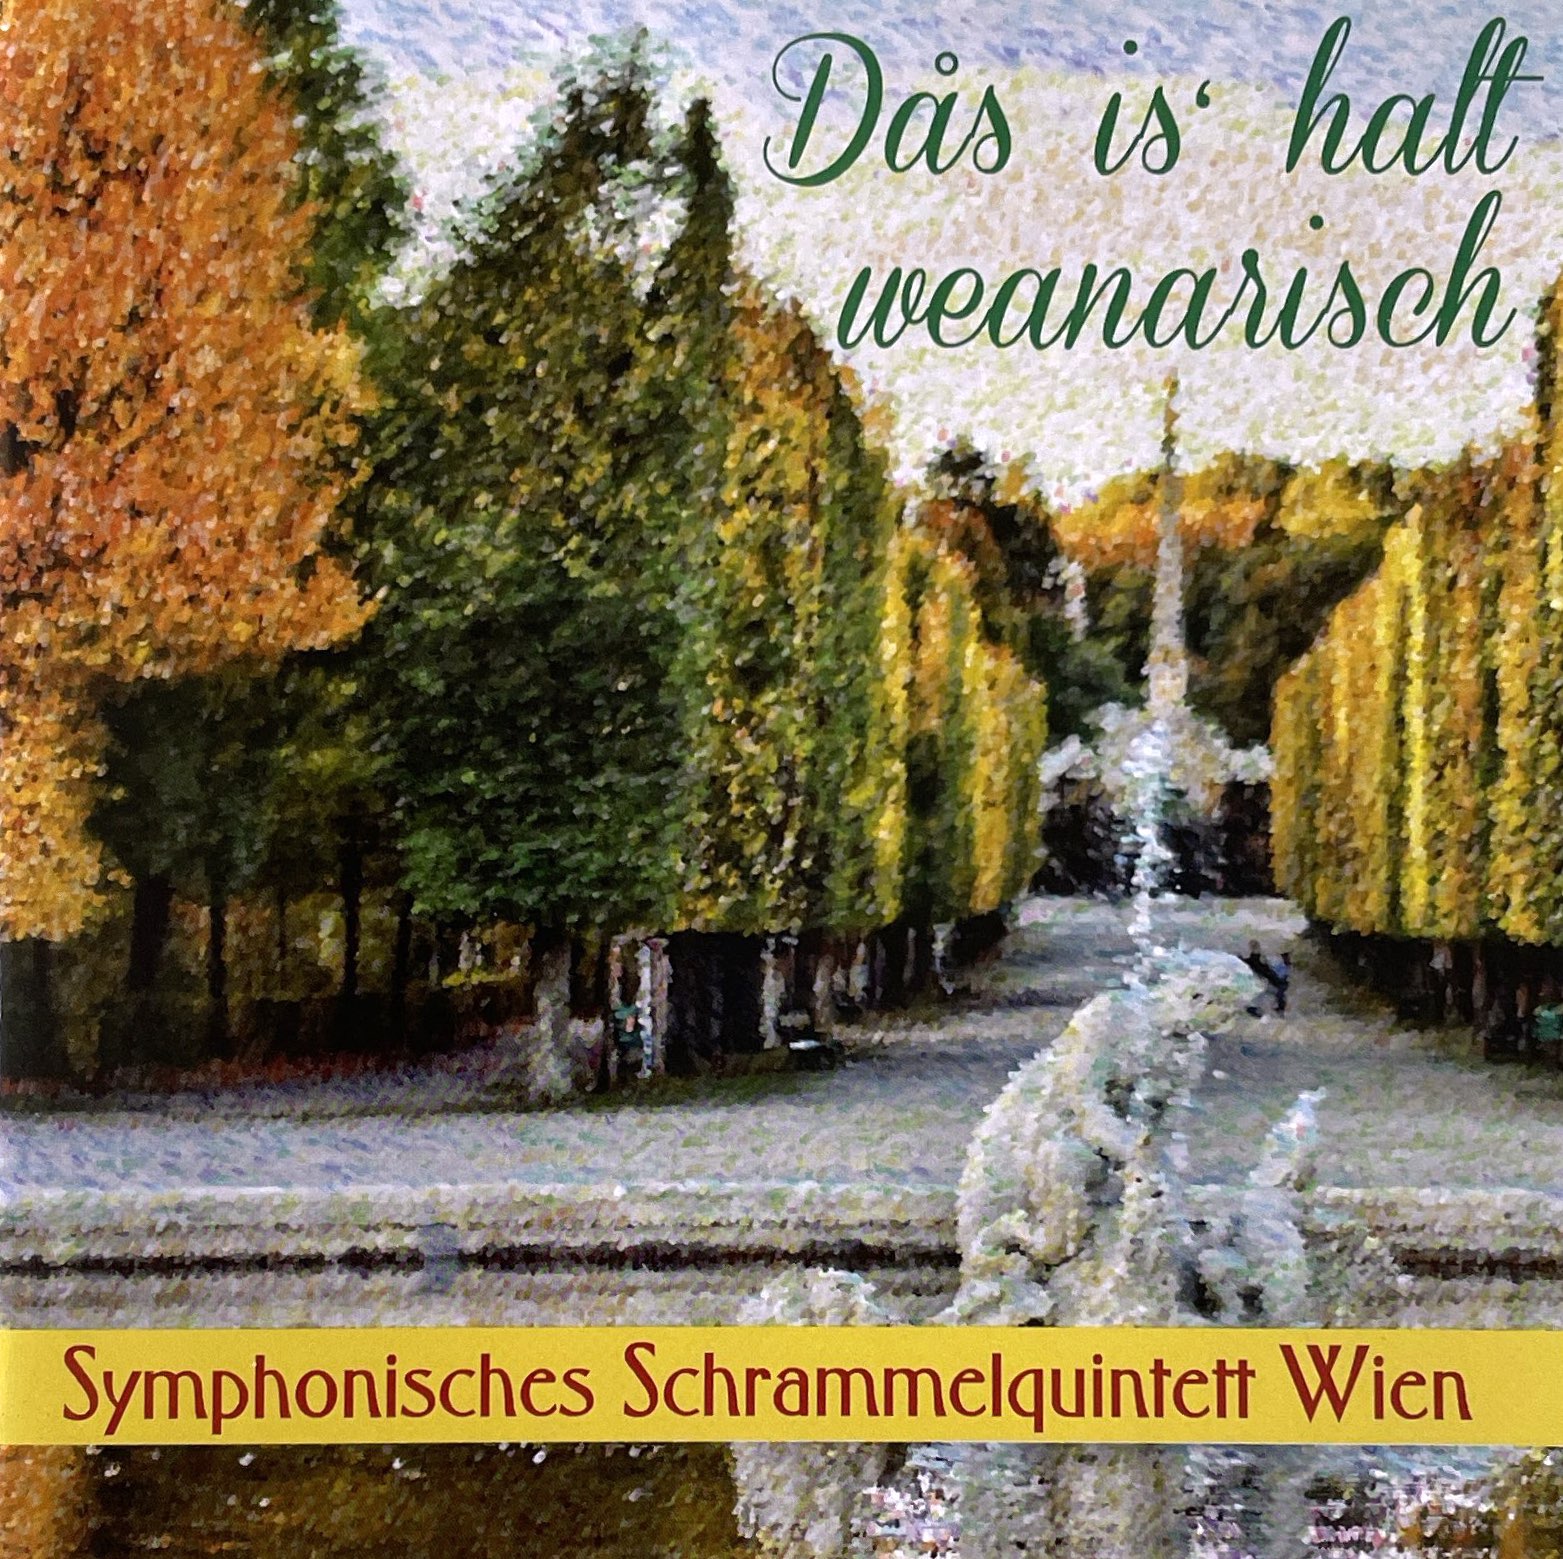 Symphonisches Schrammelquintett Wien – Das is halt weanarisch